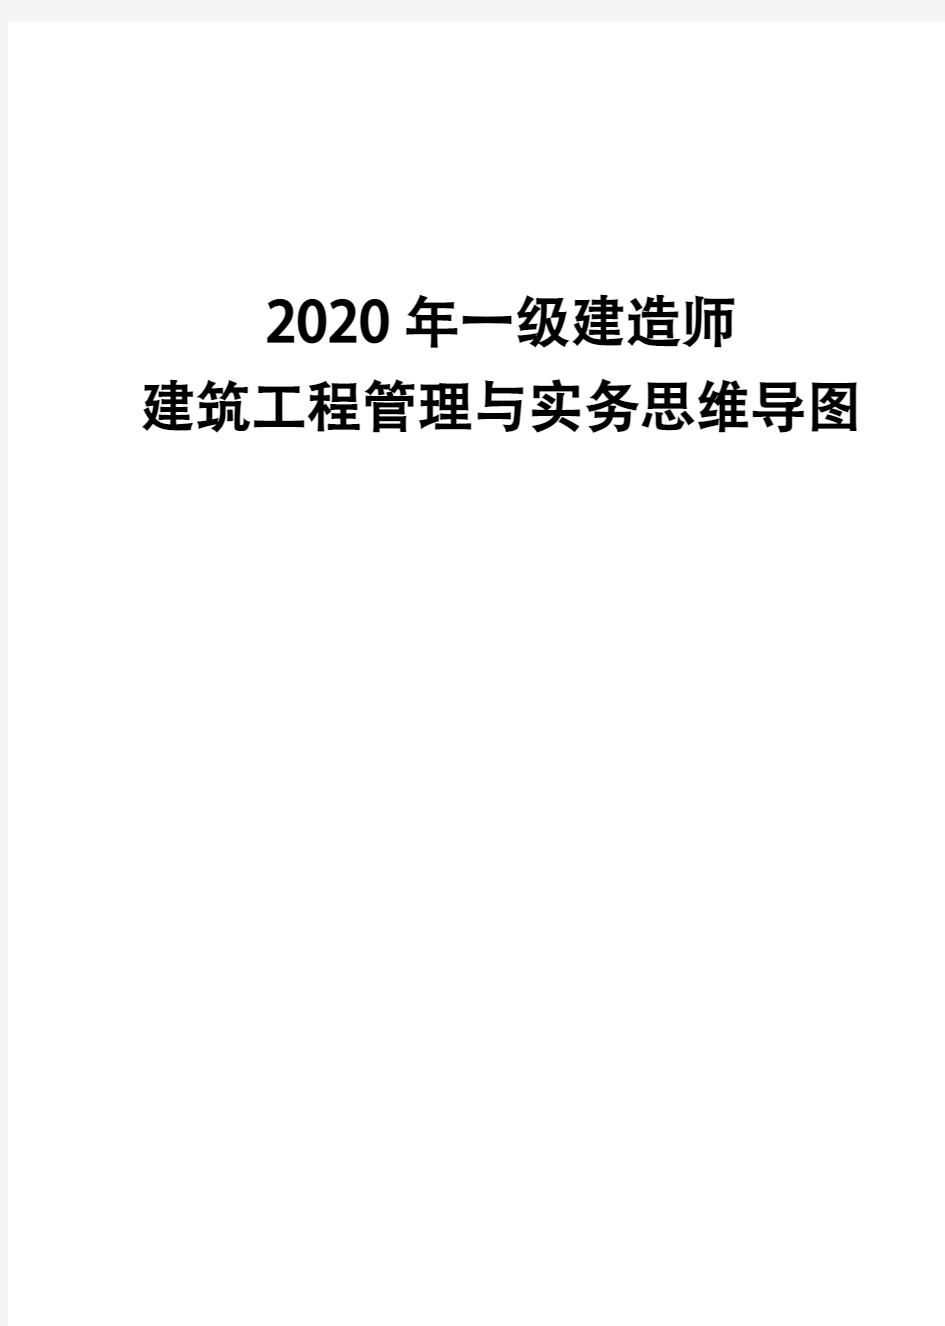 2020年一级建造师《建筑工程管理与实务》思维导图(四)